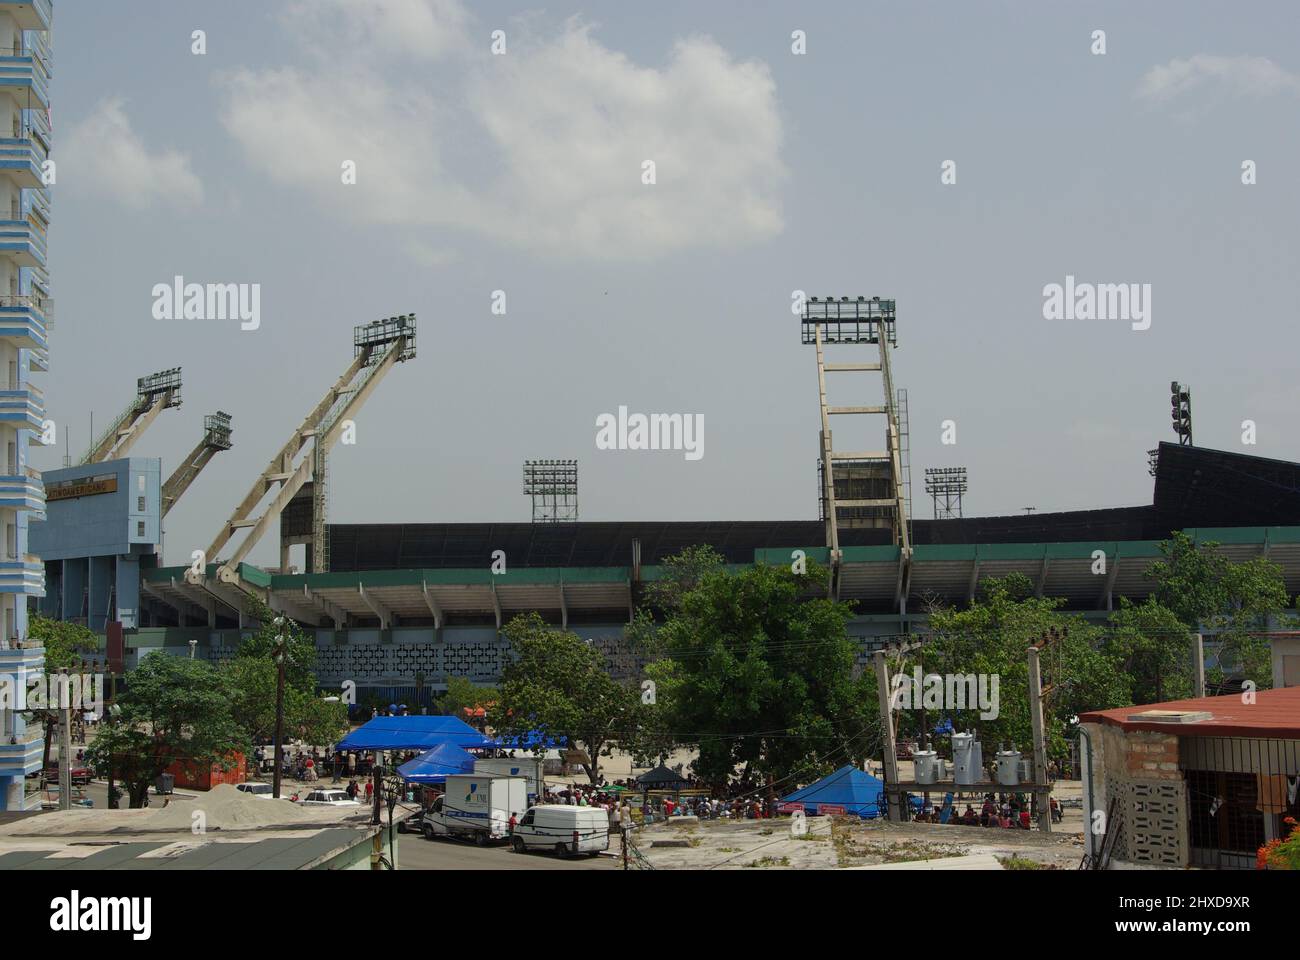 Havana , Cuba on July 18, 2009. The famous Latin American Stadium ( Stadio americolatino ) Stock Photo